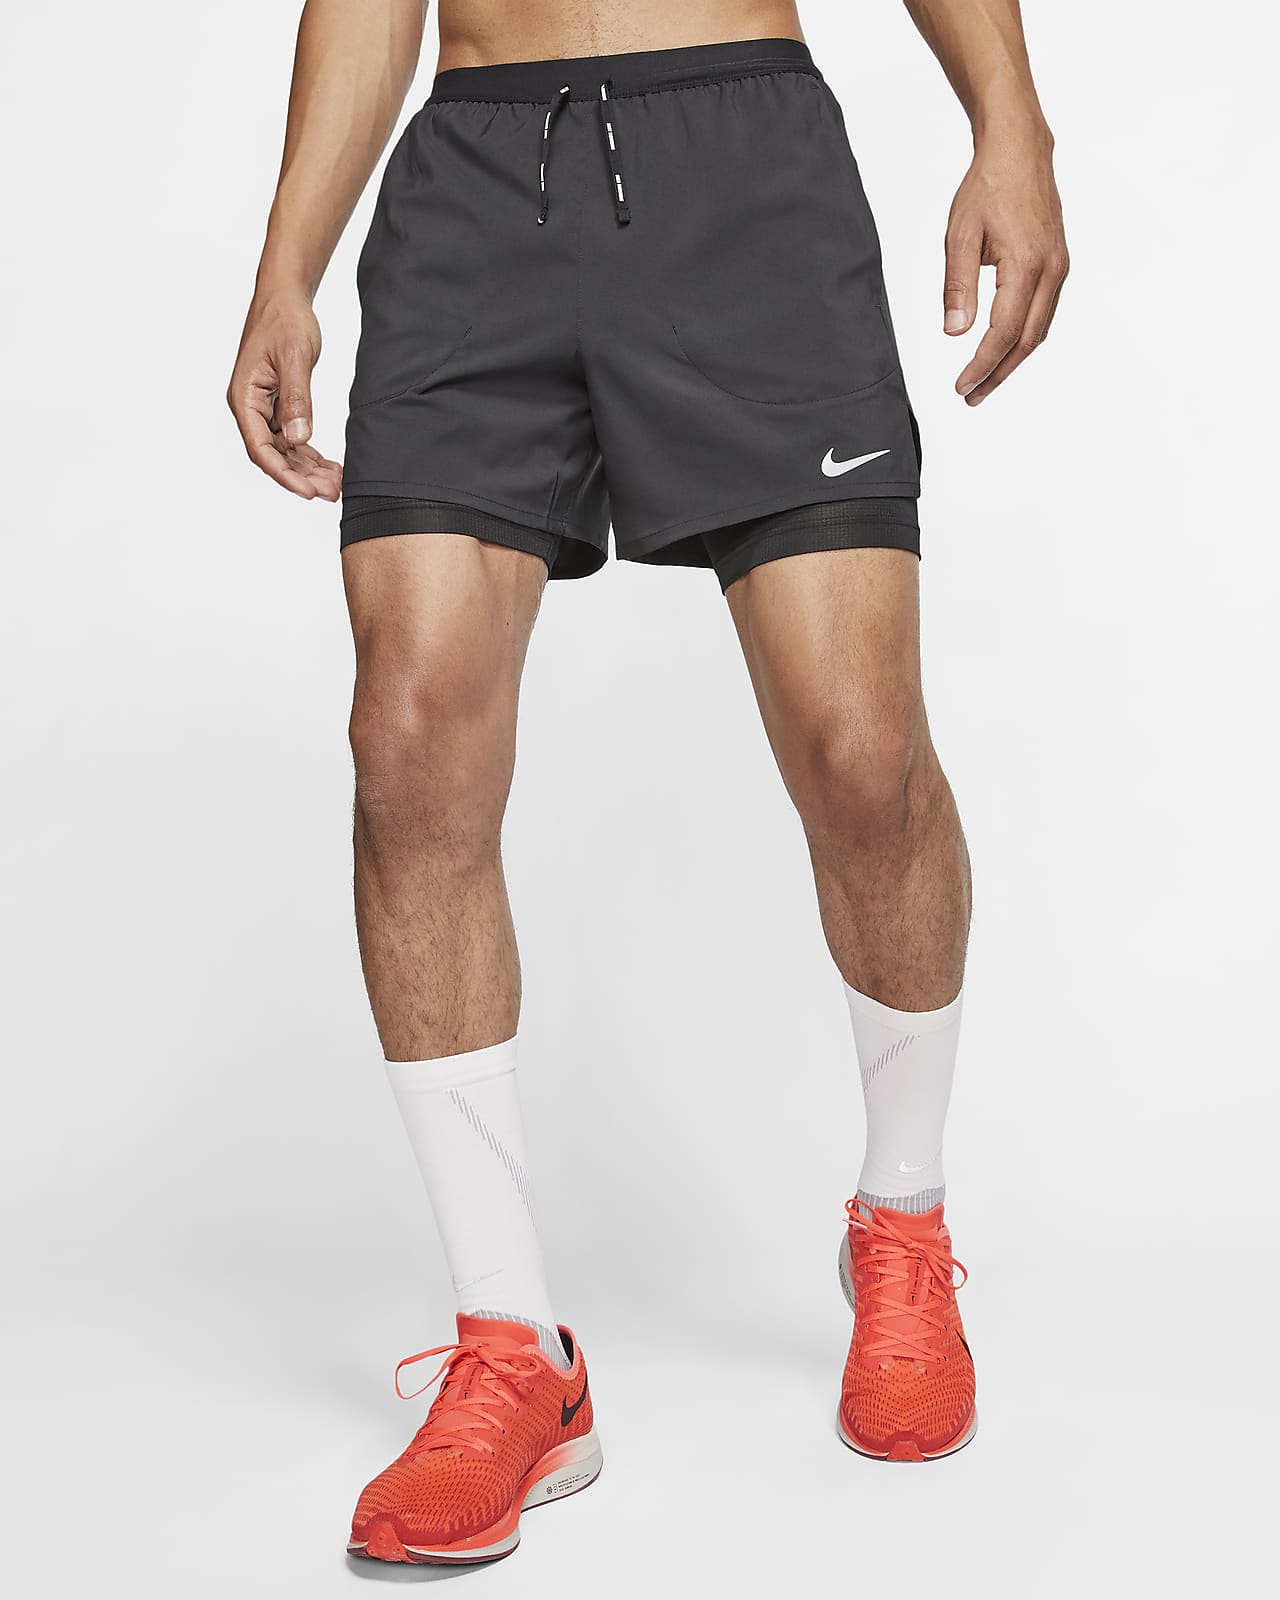 Shorts de running 2 en 1 de 13 cm para hombre Nike Flex Stride. Nike CL